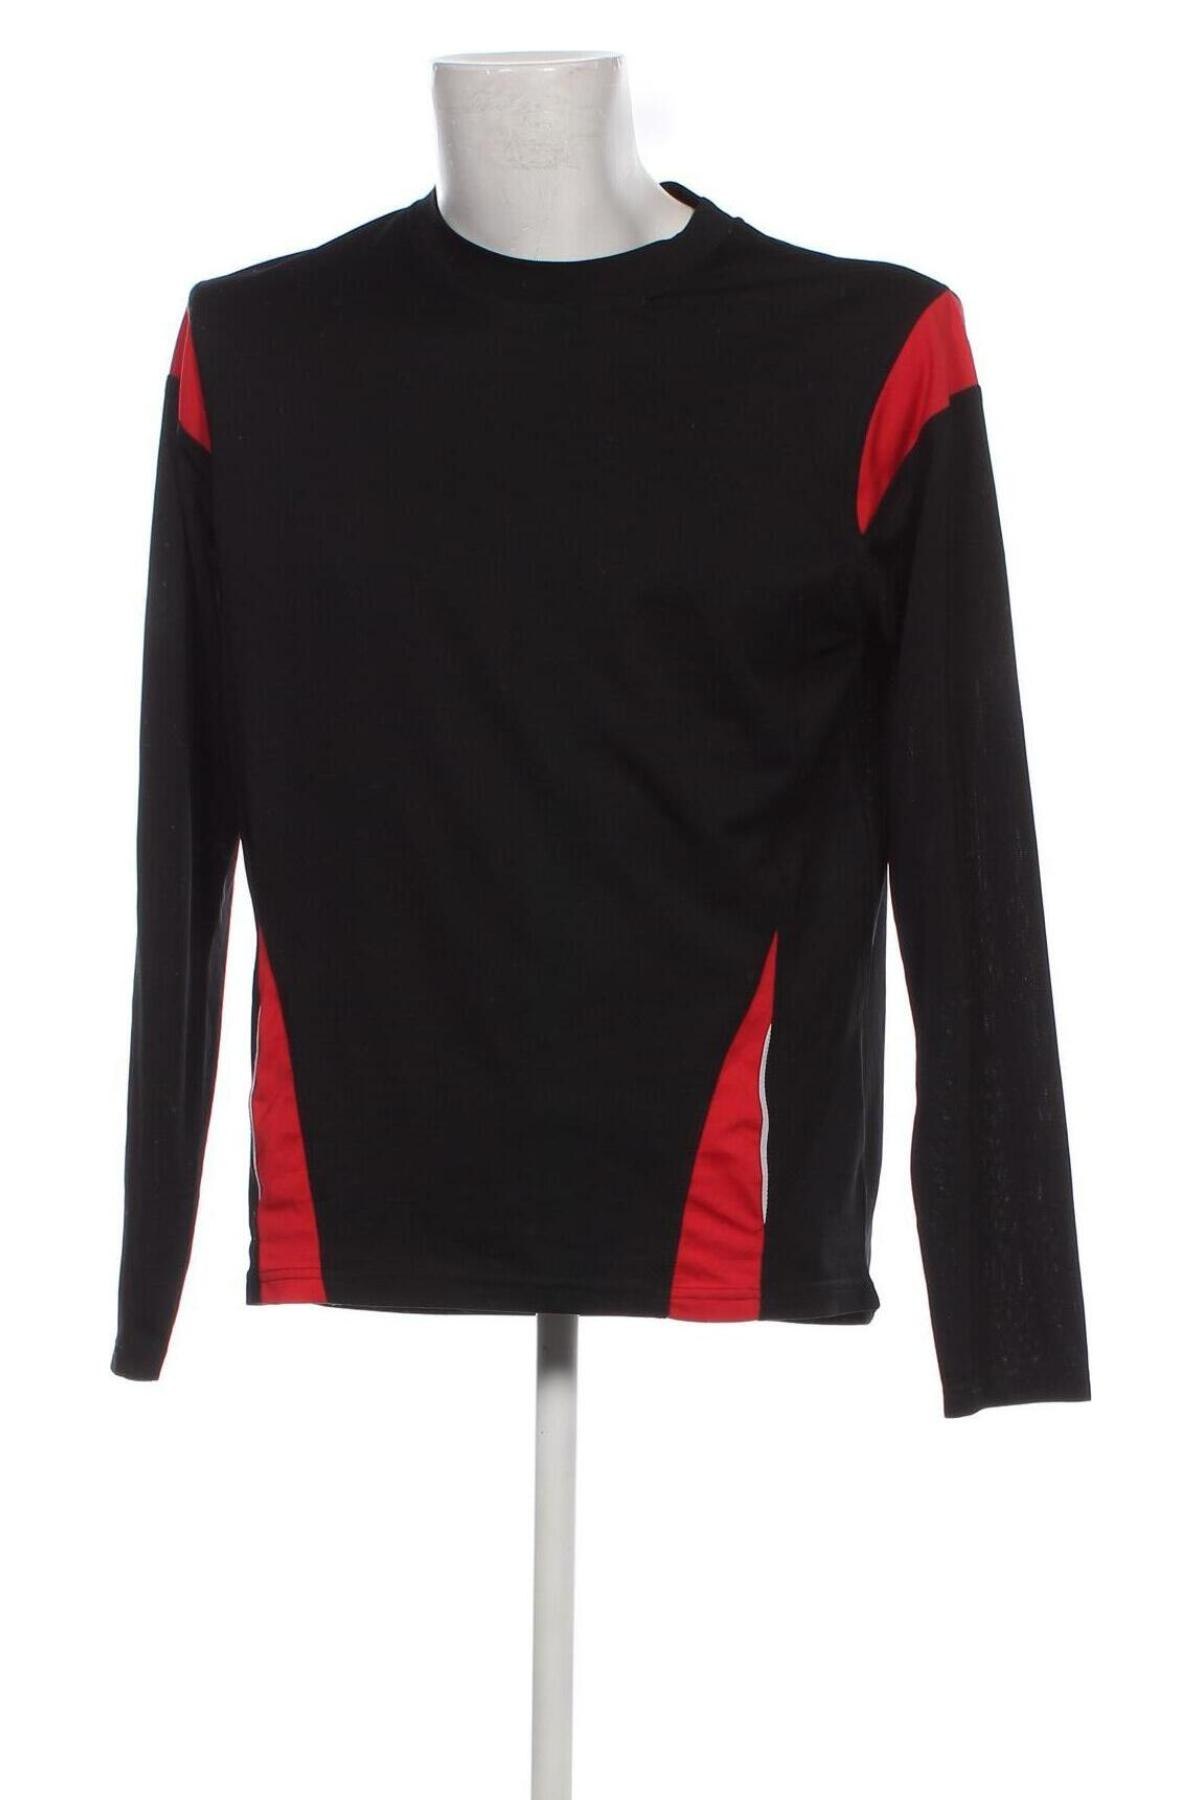 Ανδρική μπλούζα 4 Sports, Μέγεθος L, Χρώμα Μαύρο, Τιμή 2,99 €